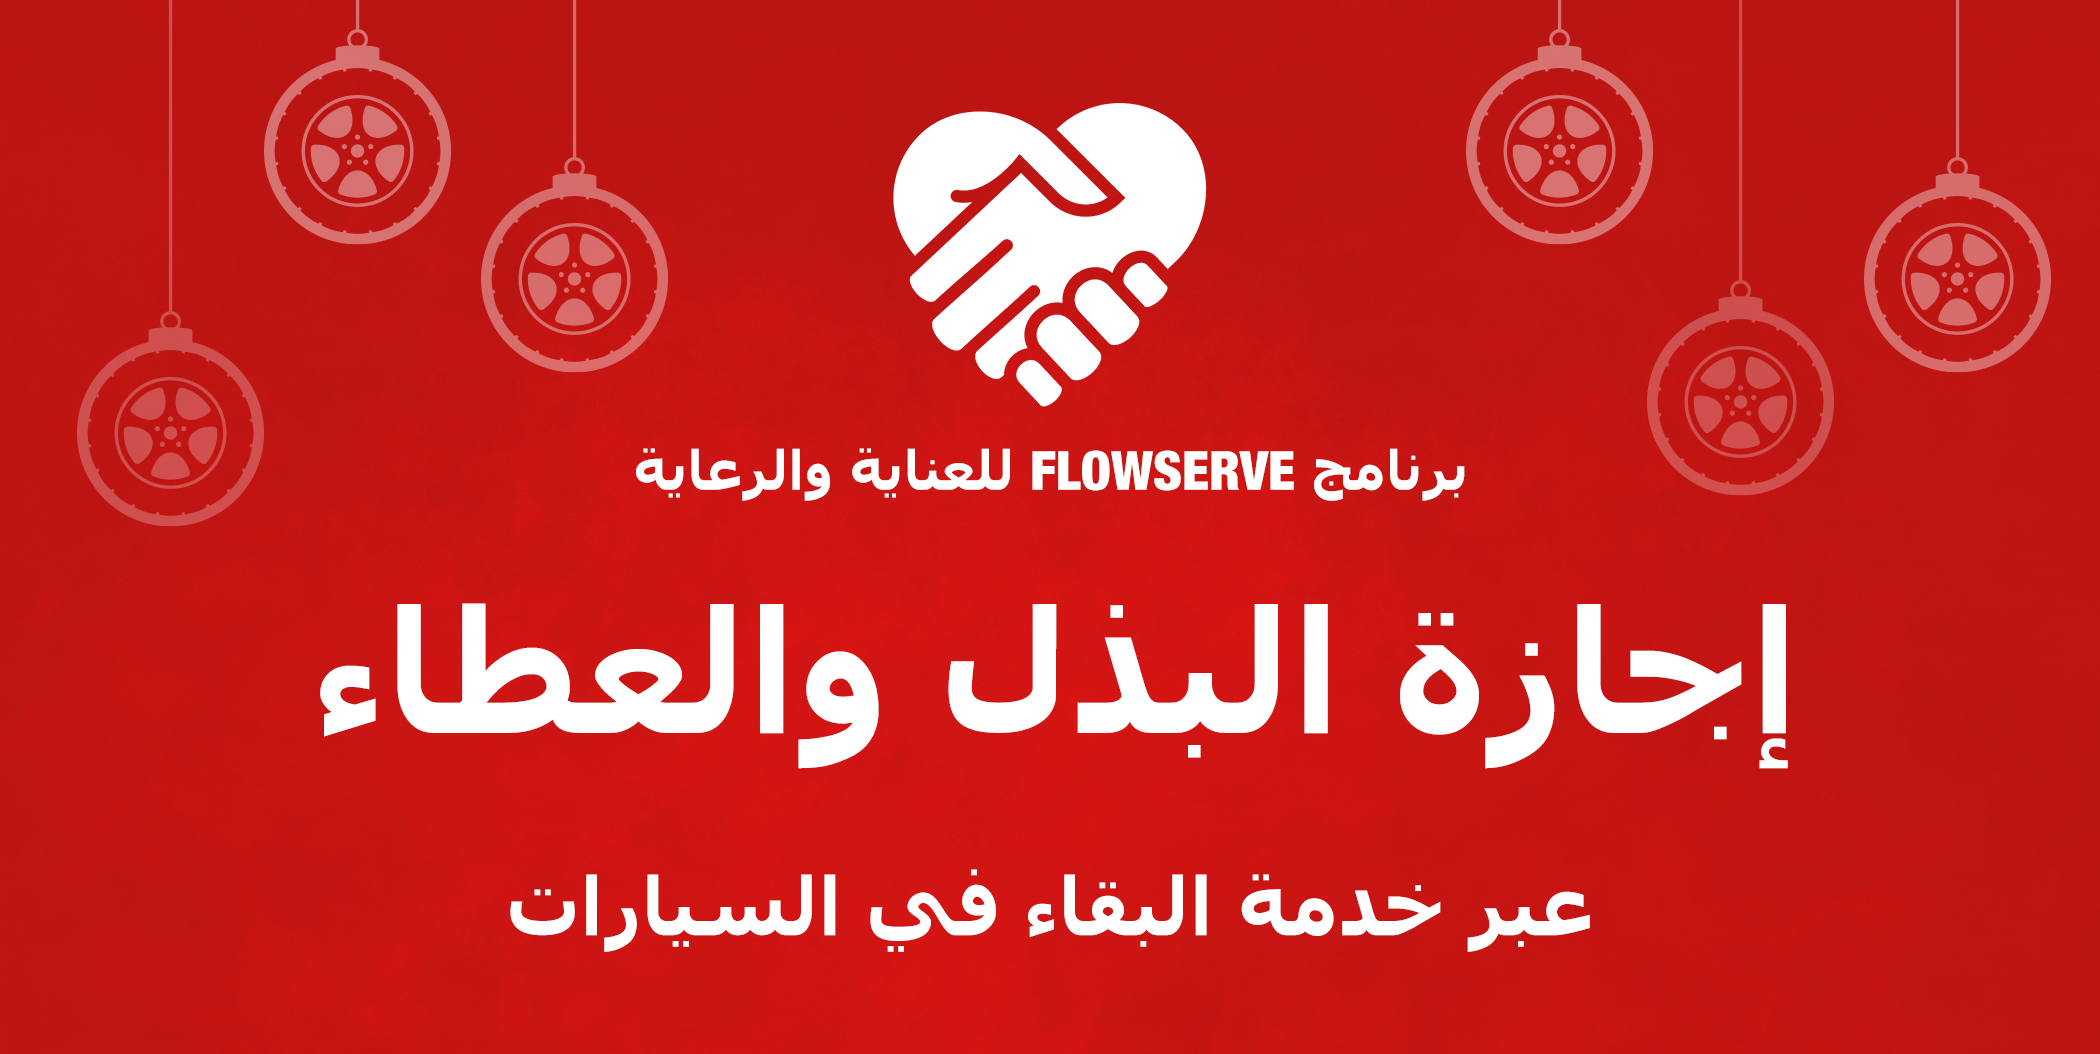 حملة شركة Flowserve لجمع التبرعات في إجازة يوم التبرع والعطاء مع البقاء في السيارات